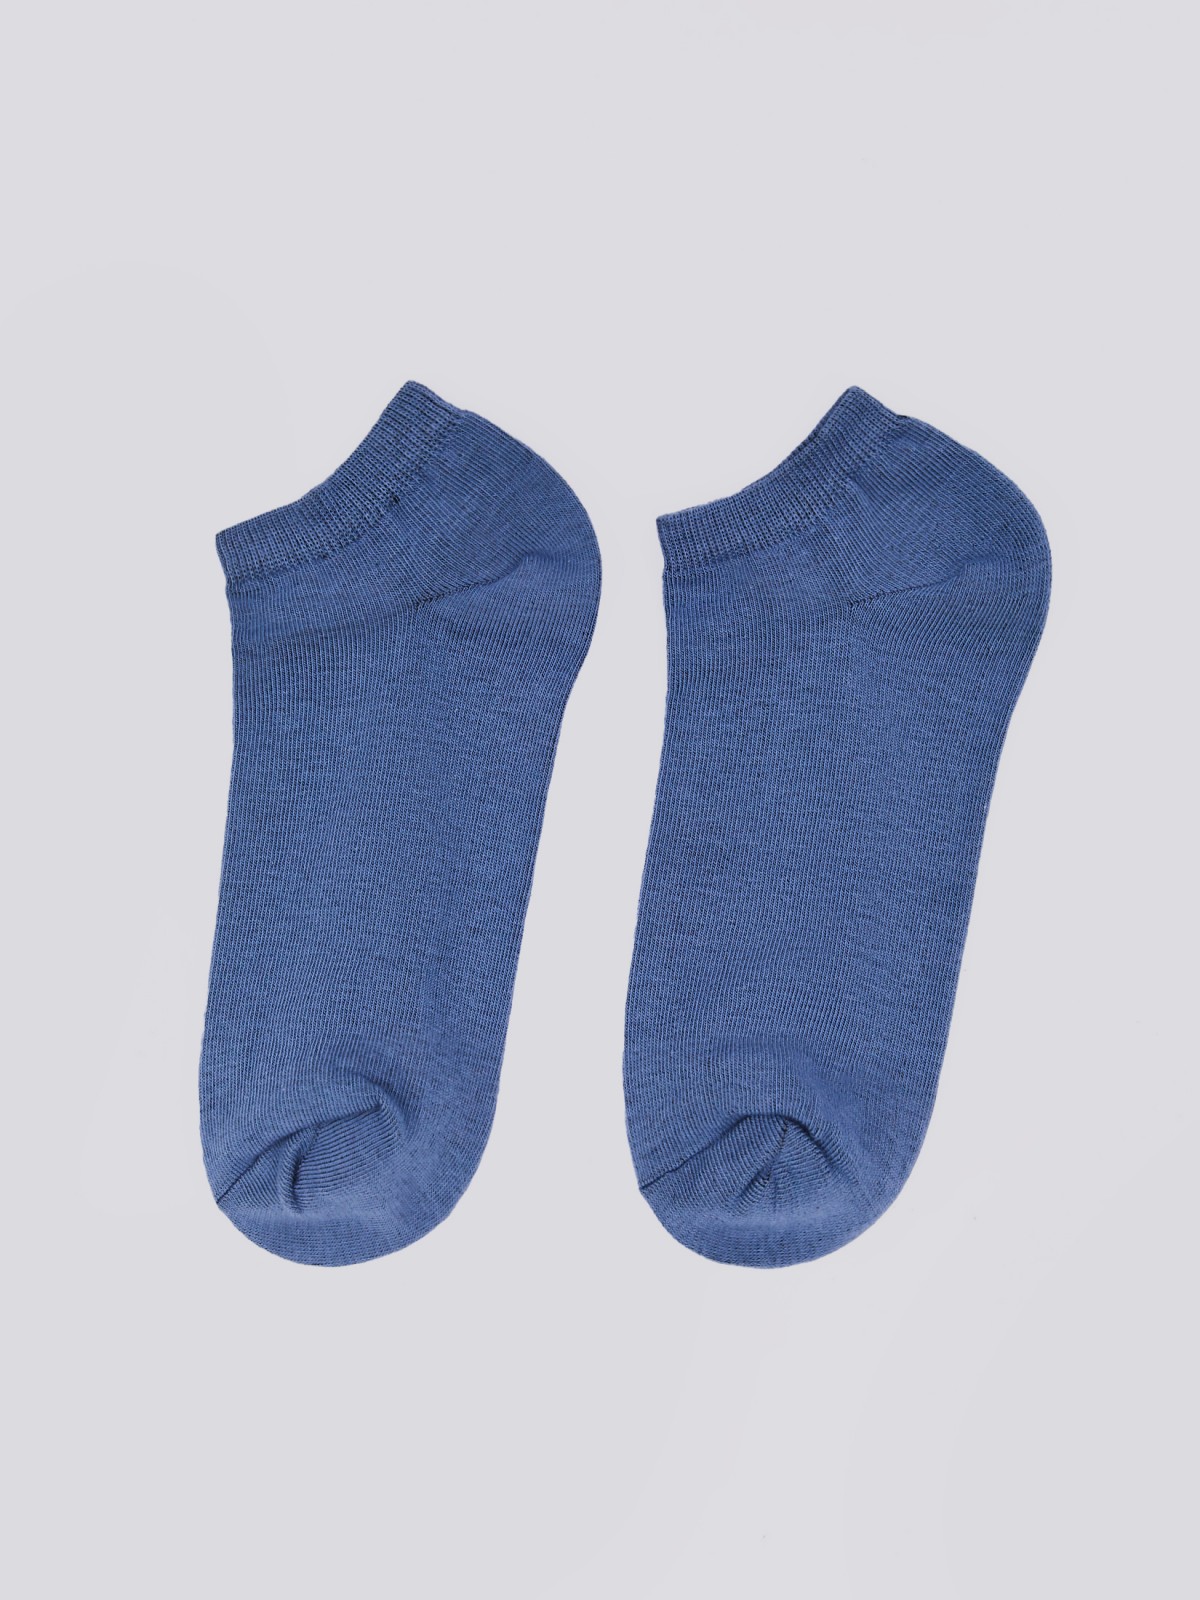 Набор коротких носков (5 пар в комплекте) zolla 01411998J175, цвет темно-синий, размер 25-27 - фото 3